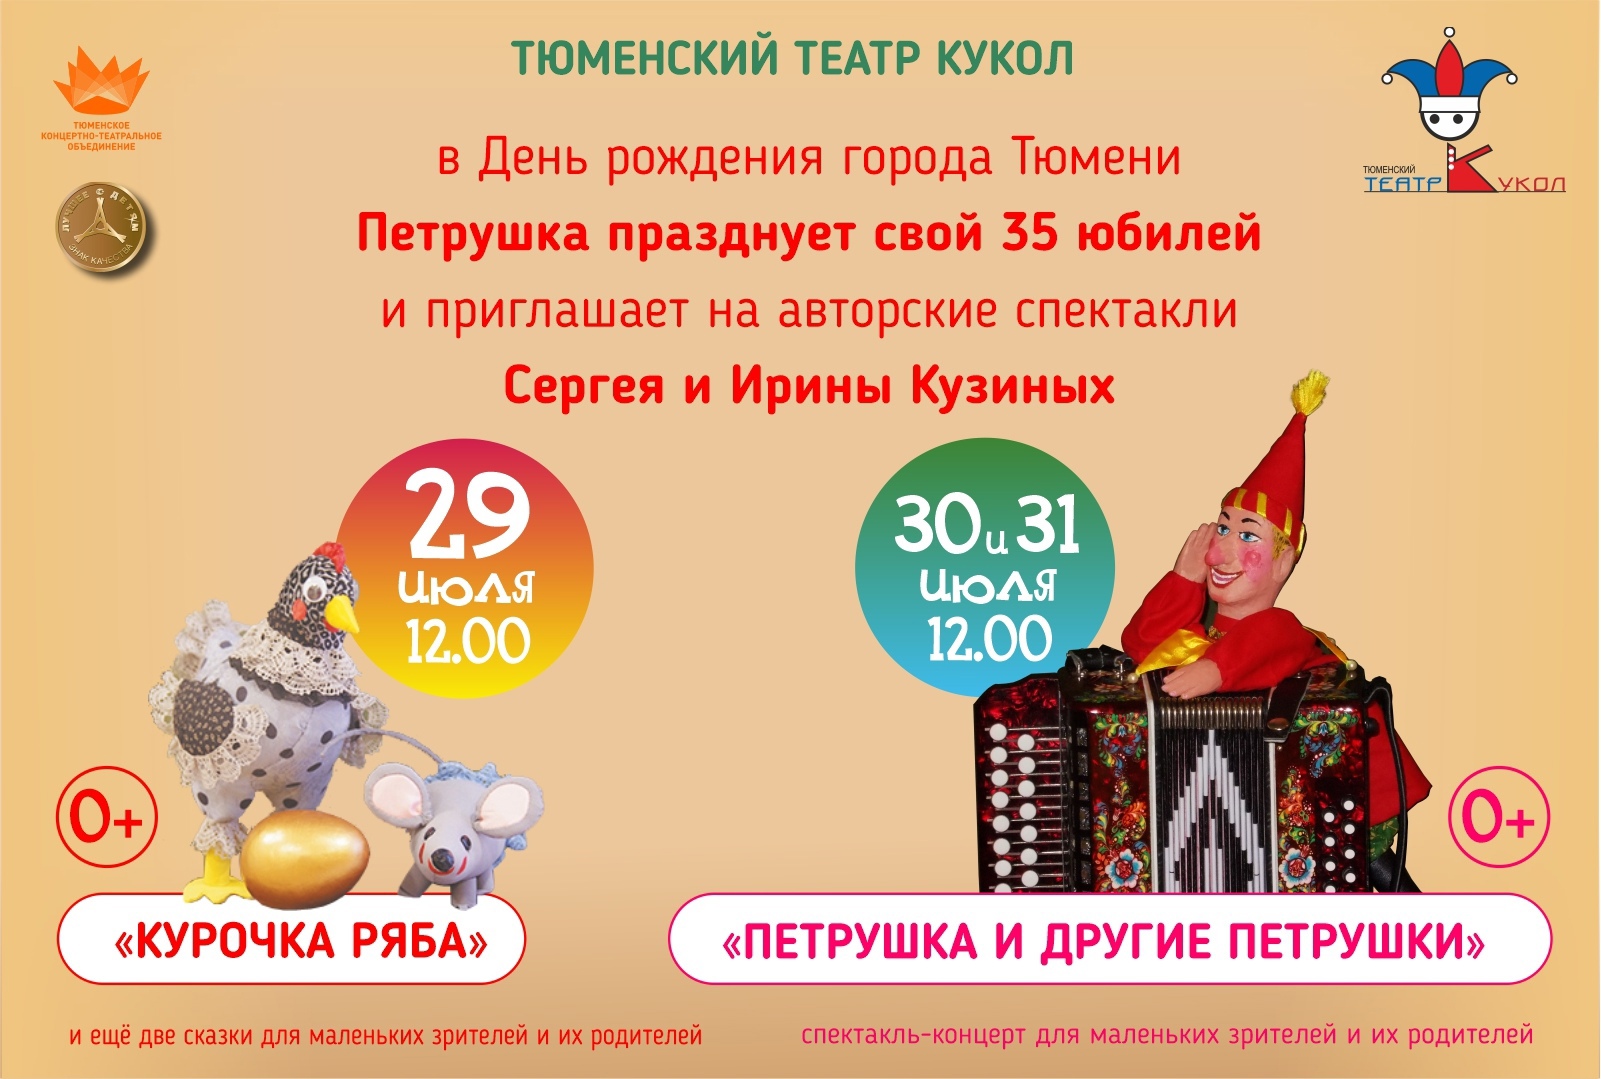 Тюменский театр кукол. Афиша театр тюмень март